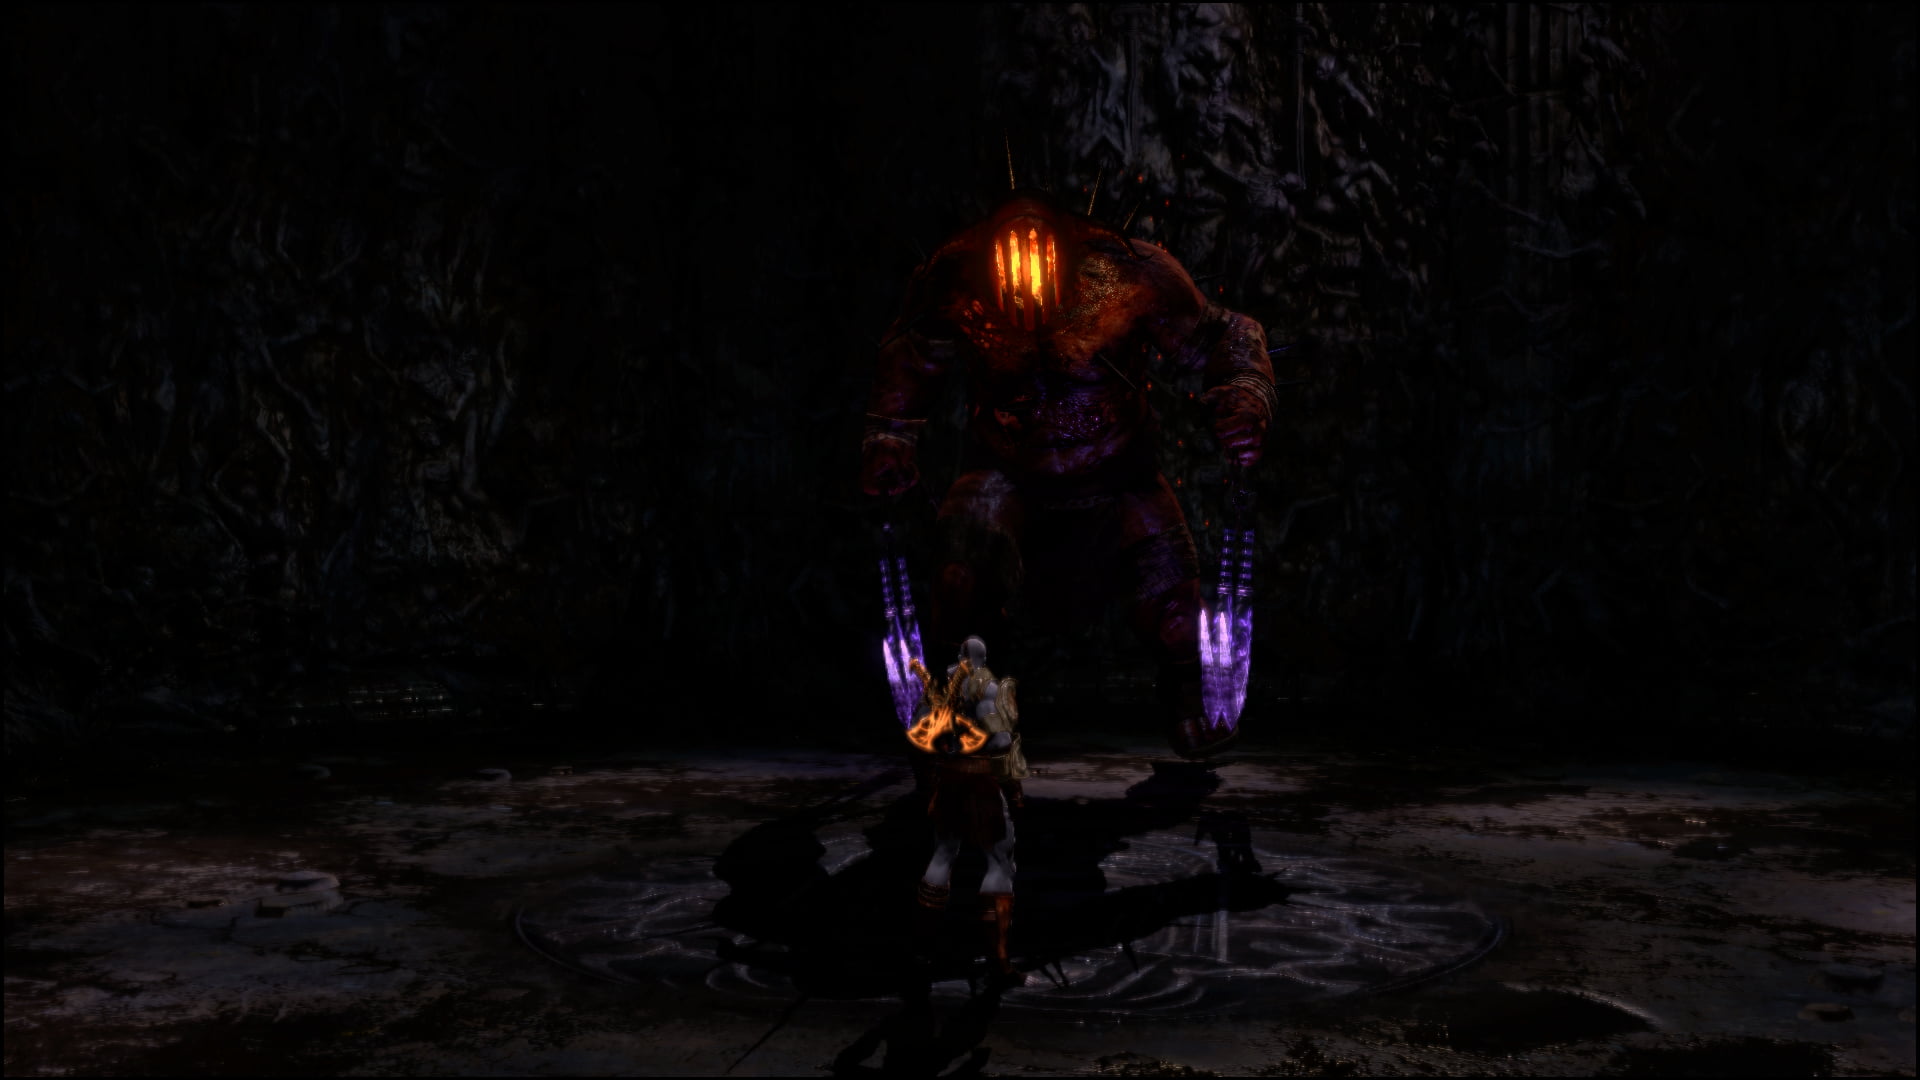 God of War III, PlayStation 4, Kratos, Hades (video game)